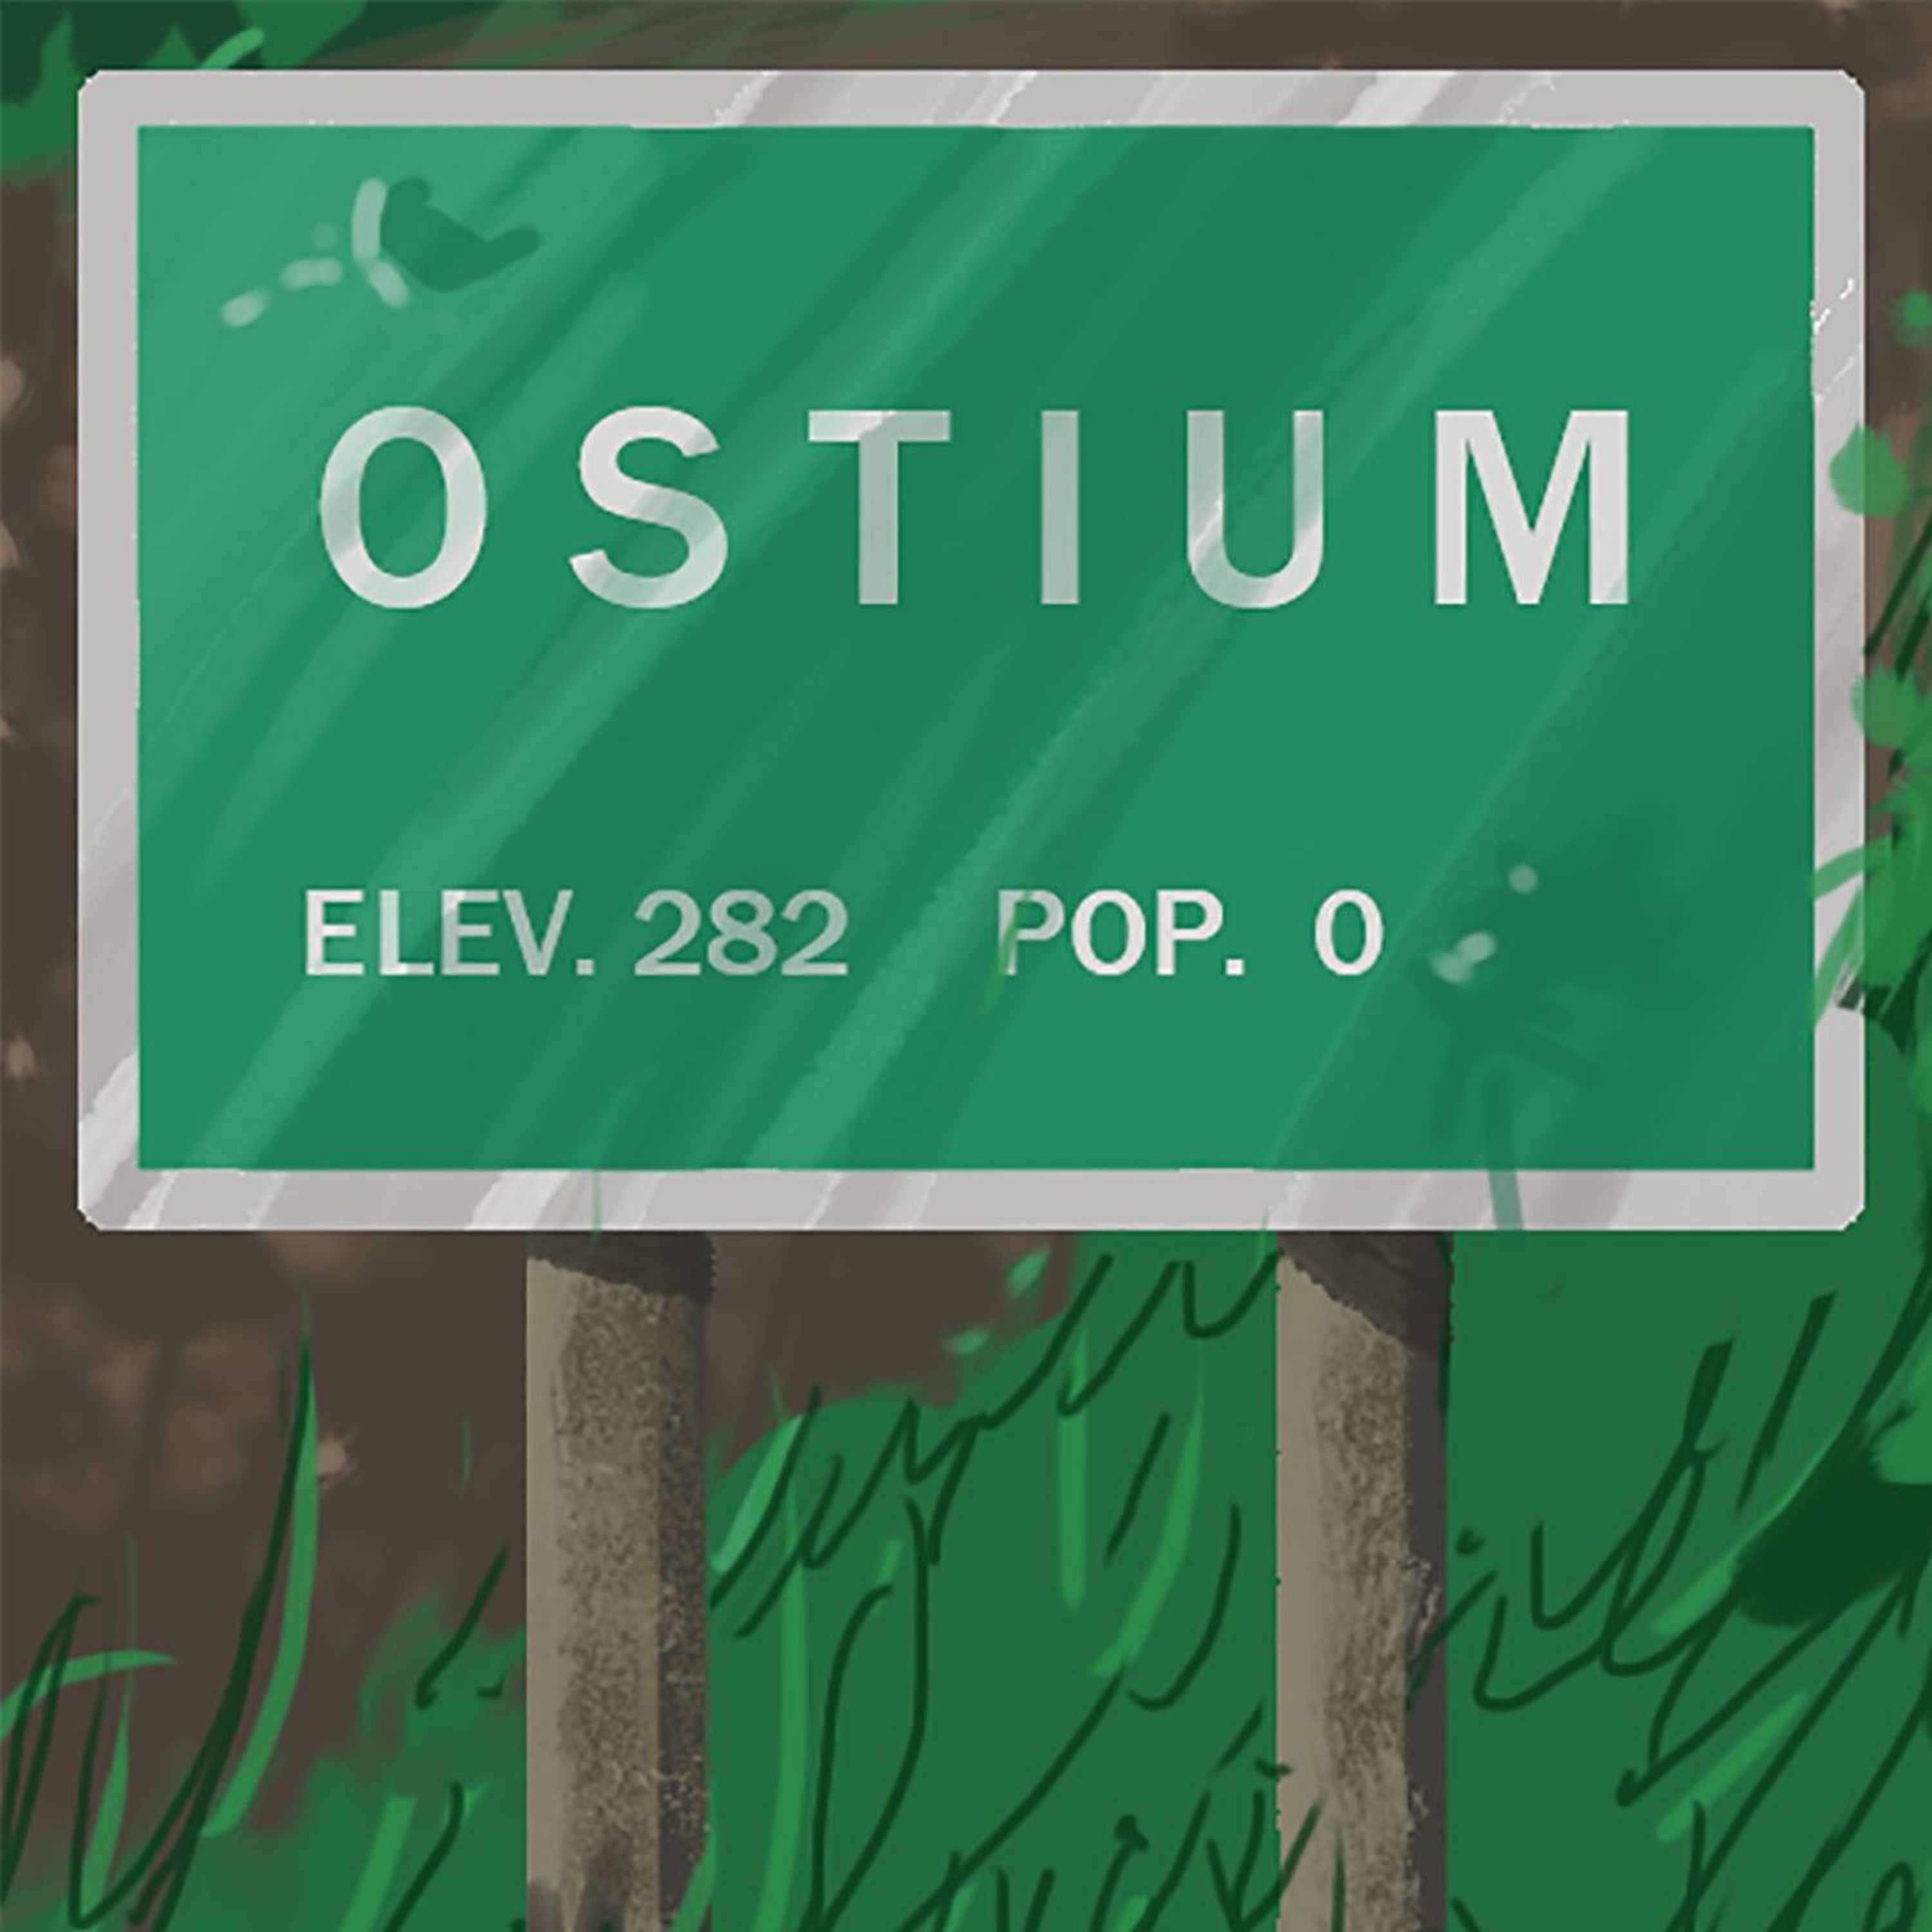 Episode 12 - Cultum Ossium